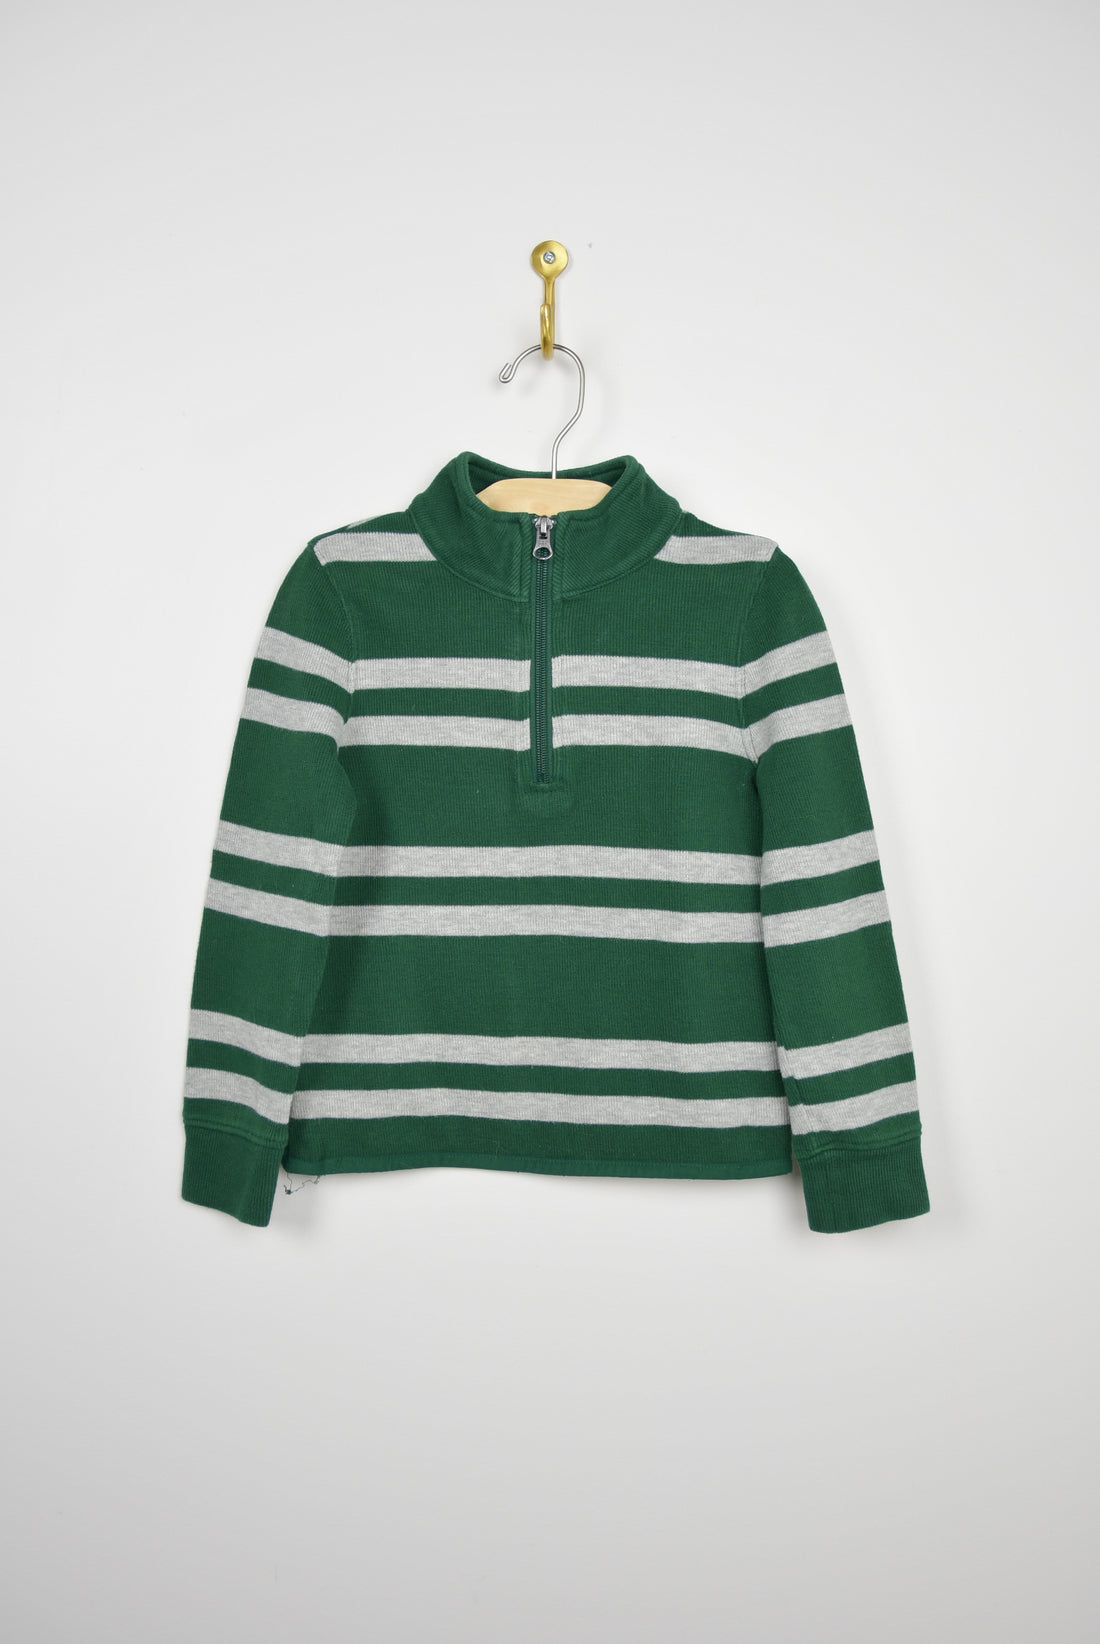 Gap Gap Knit Striped Sweater - 4-5T